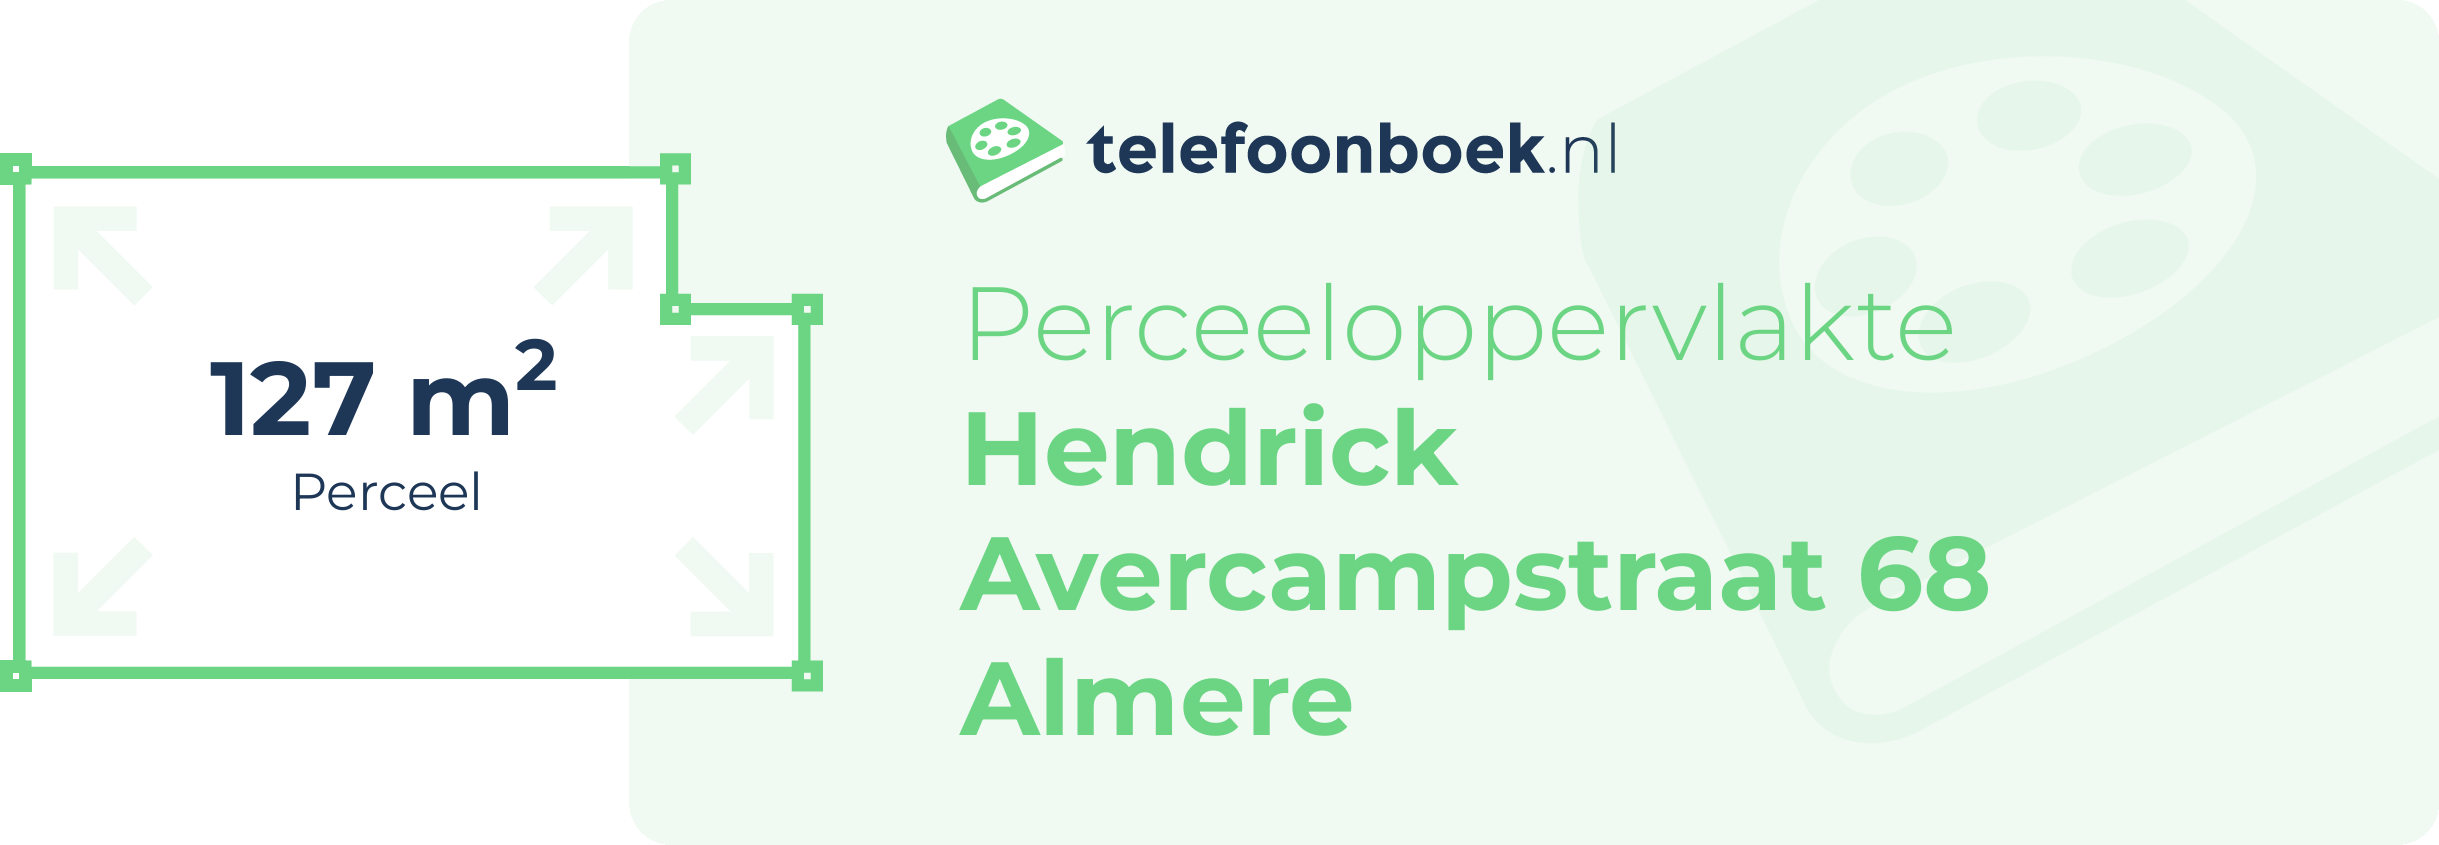 Perceeloppervlakte Hendrick Avercampstraat 68 Almere